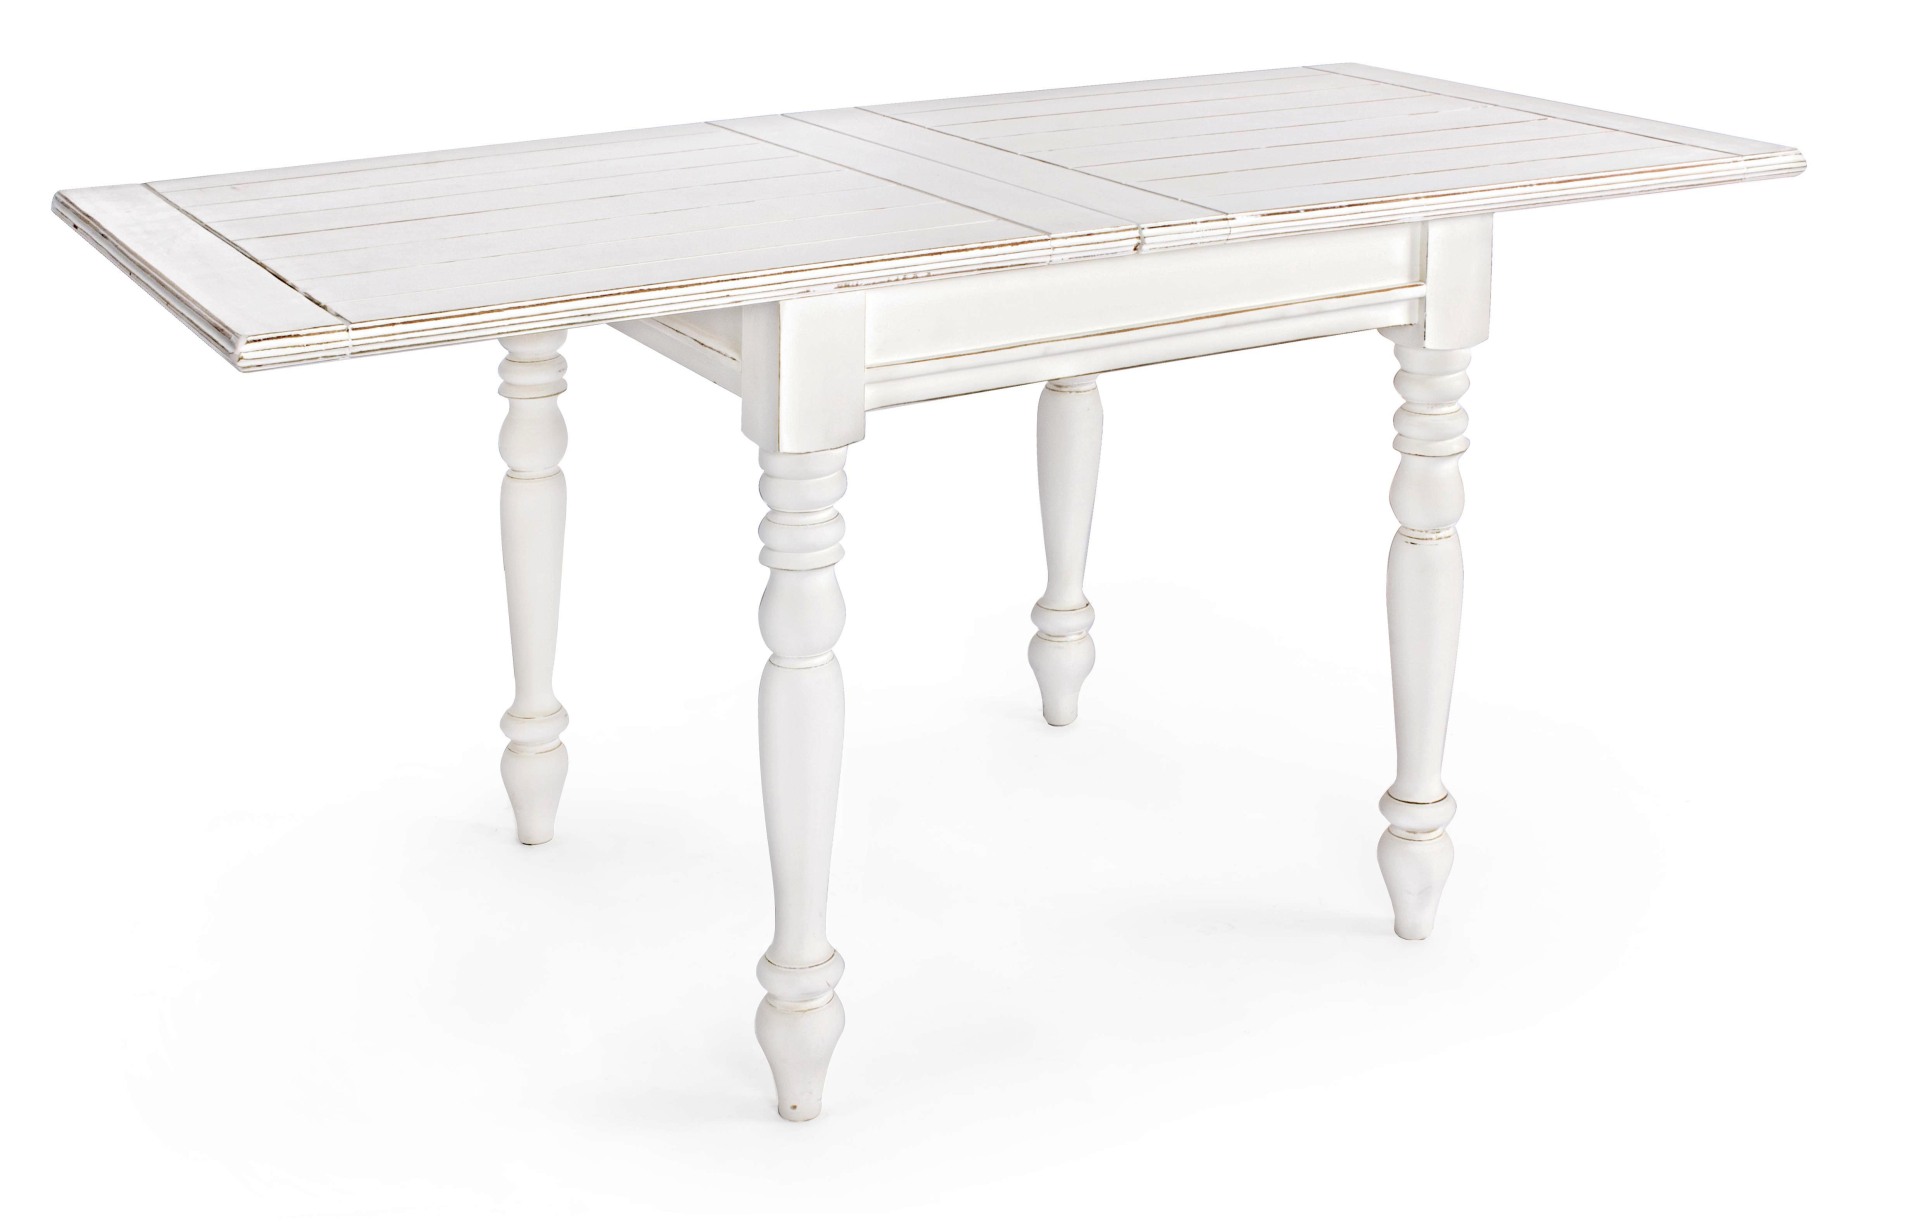 Der Esstisch Colette überzeugt mit seinem klassischem Design. Gefertigt wurde er aus Mangoholz, welches einen weißen Farbton besitzt. Das Gestell des Tisches ist auch aus MAngoholz. Der Tisch ist ausziehbar von einer Breite von 80 cm auf 160 cm.